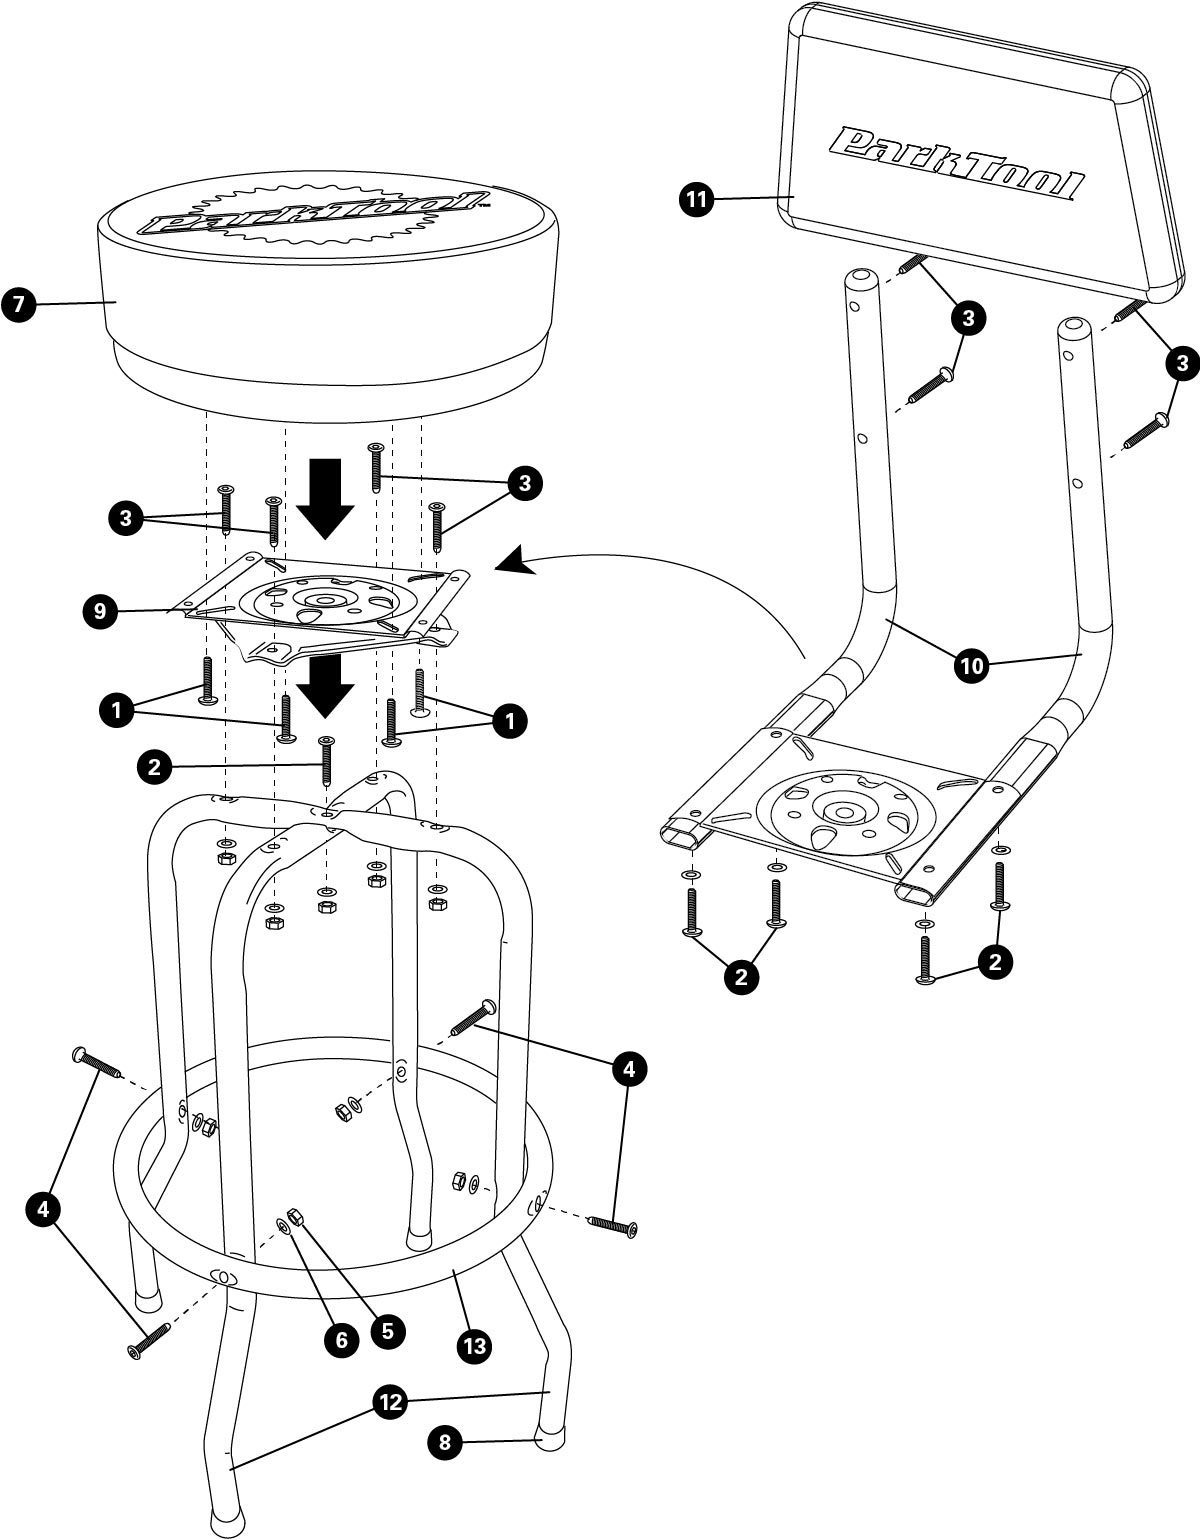 Parts diagram for STL-3K Shop Stool Backrest Kit, click to enlarge